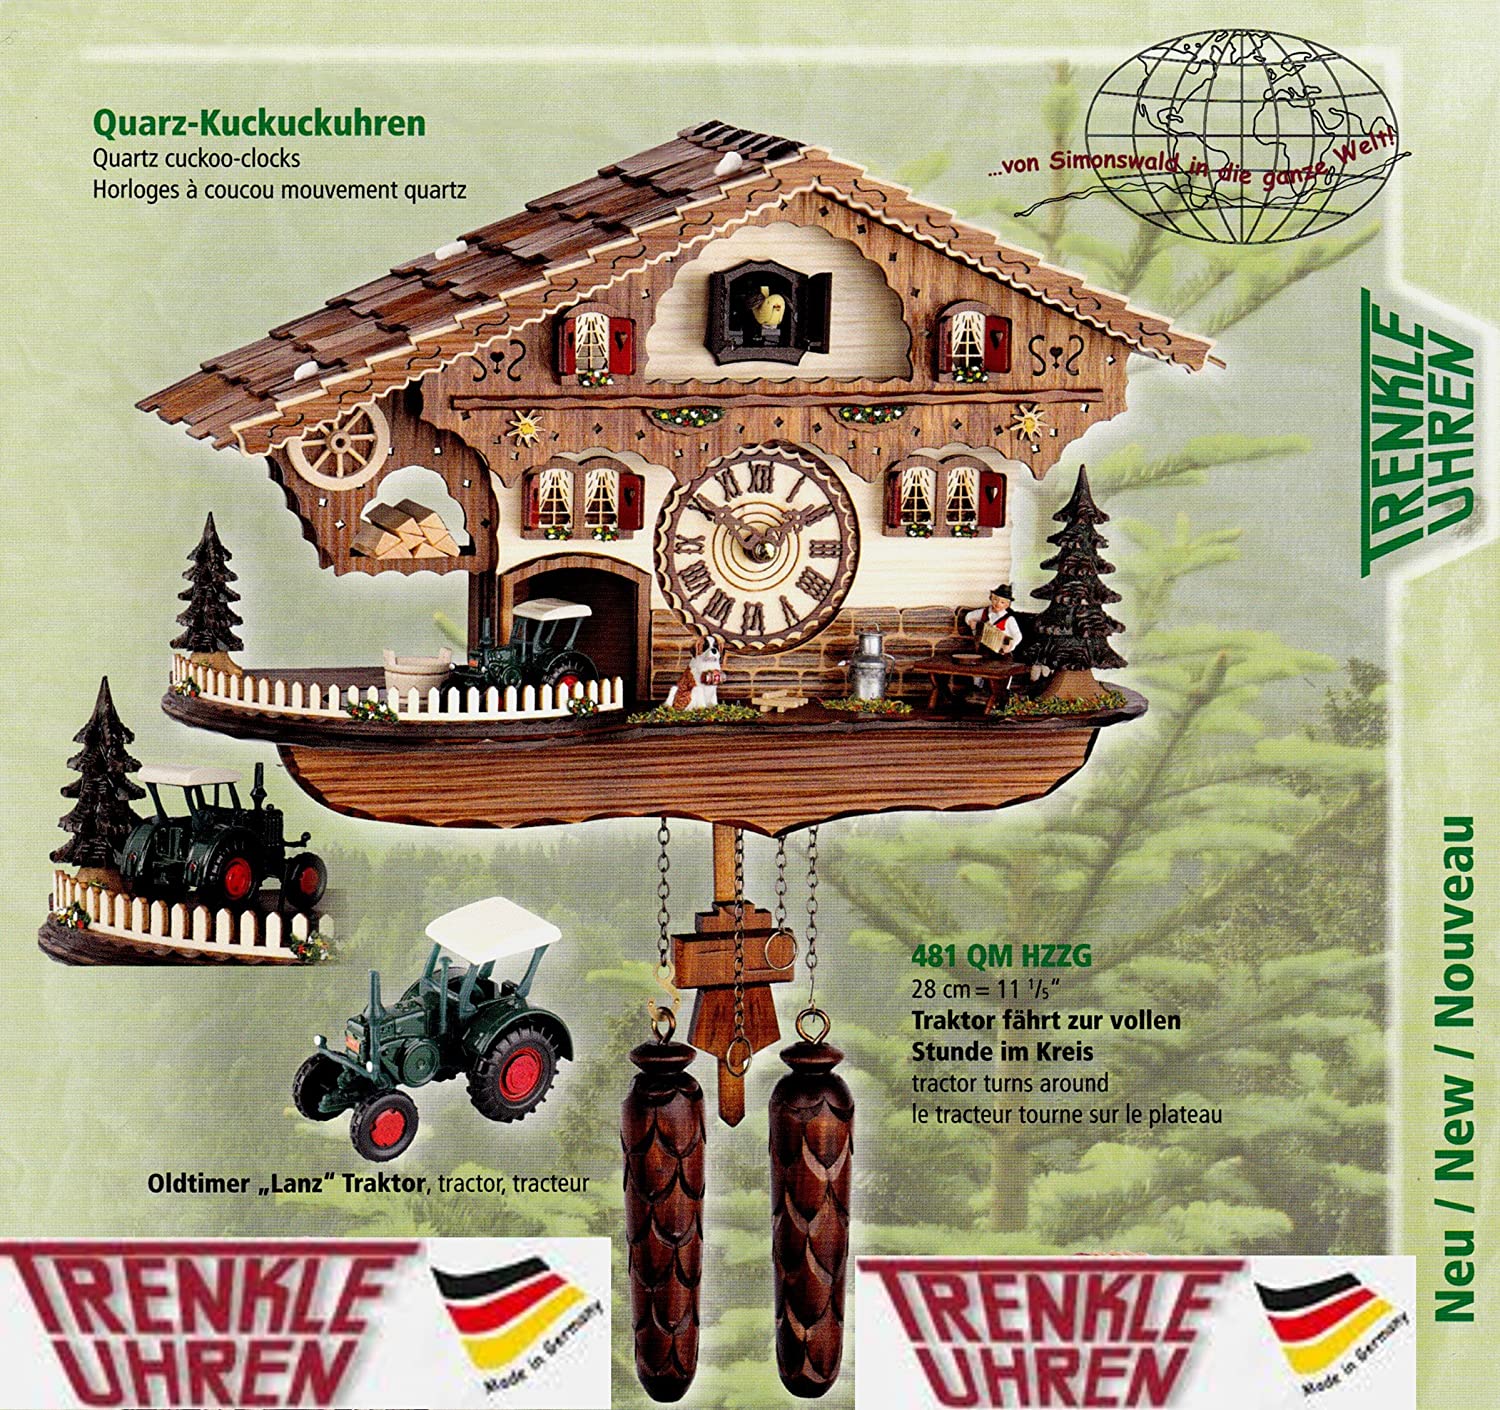 Trenkle- Kuckucksuhr- mit Traktor Lanz- Oldtimer fährt Jede volle Stunde sowie 12 Melodien- Cuckoo Clocks- Schwarzwald